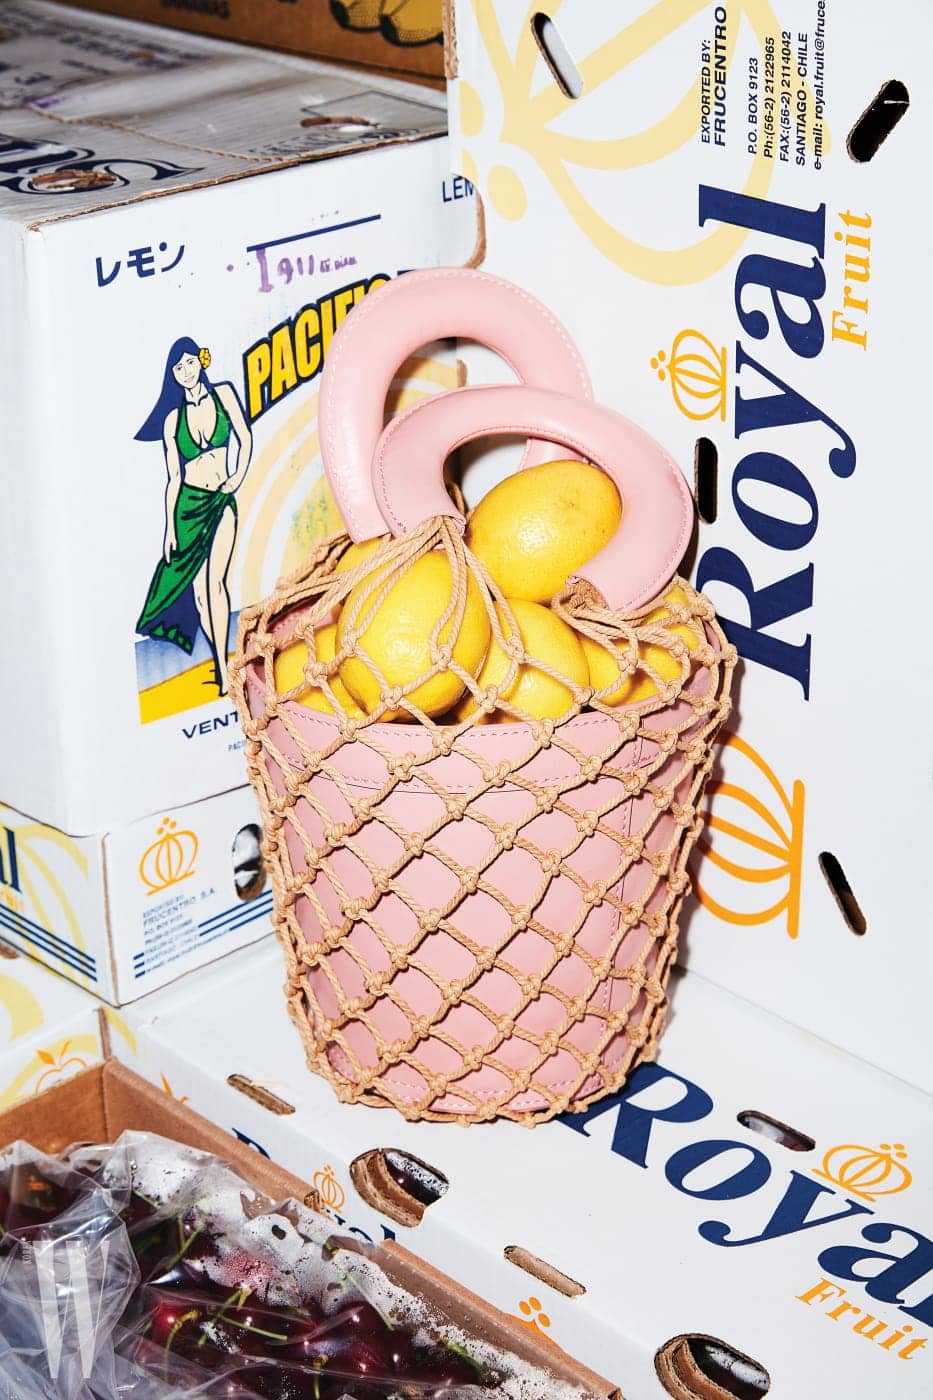  레몬이 담긴 연핑크색 바구니 백은 스타우드 by 네타포르테 제품. 87만원대.